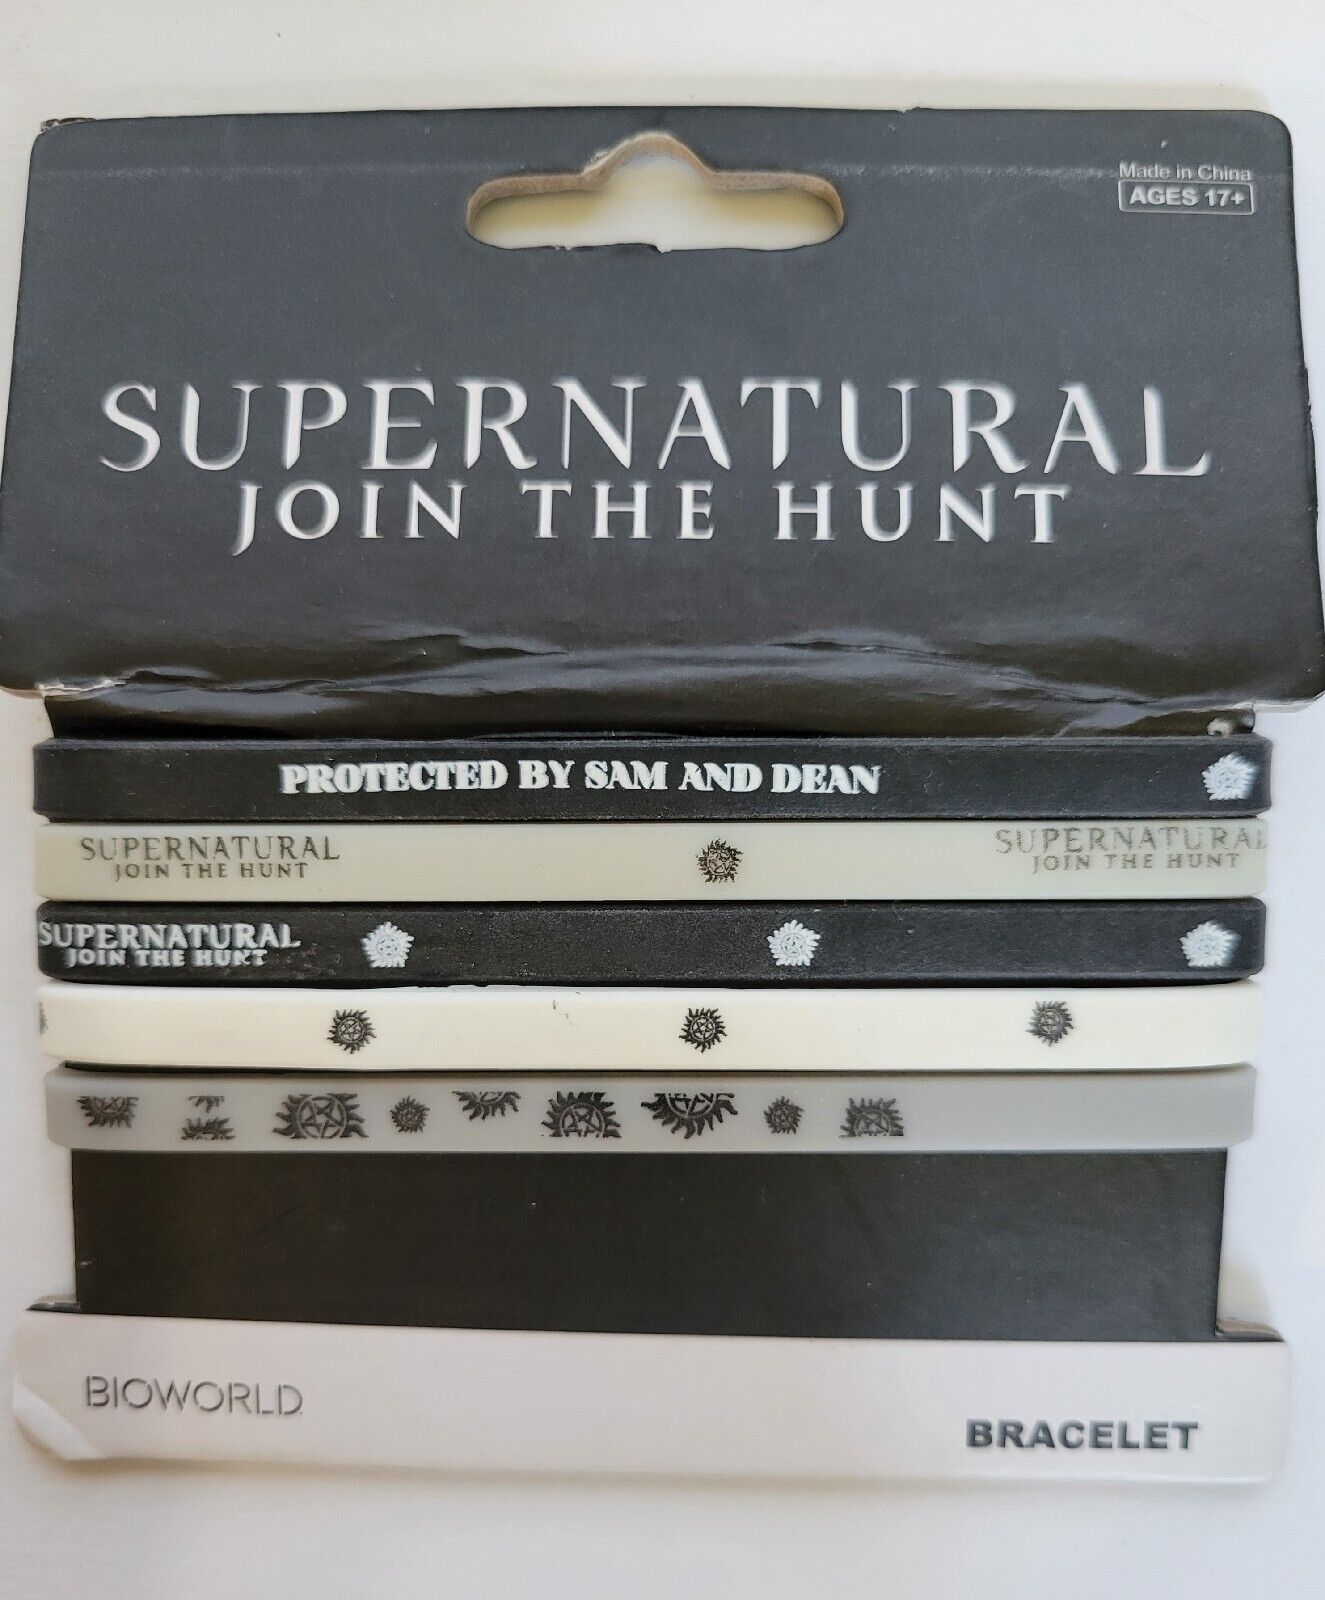 BIOWORLD Supernatural Join The Hunt Multi Pack Bracelets 5 Rubber Band Designs